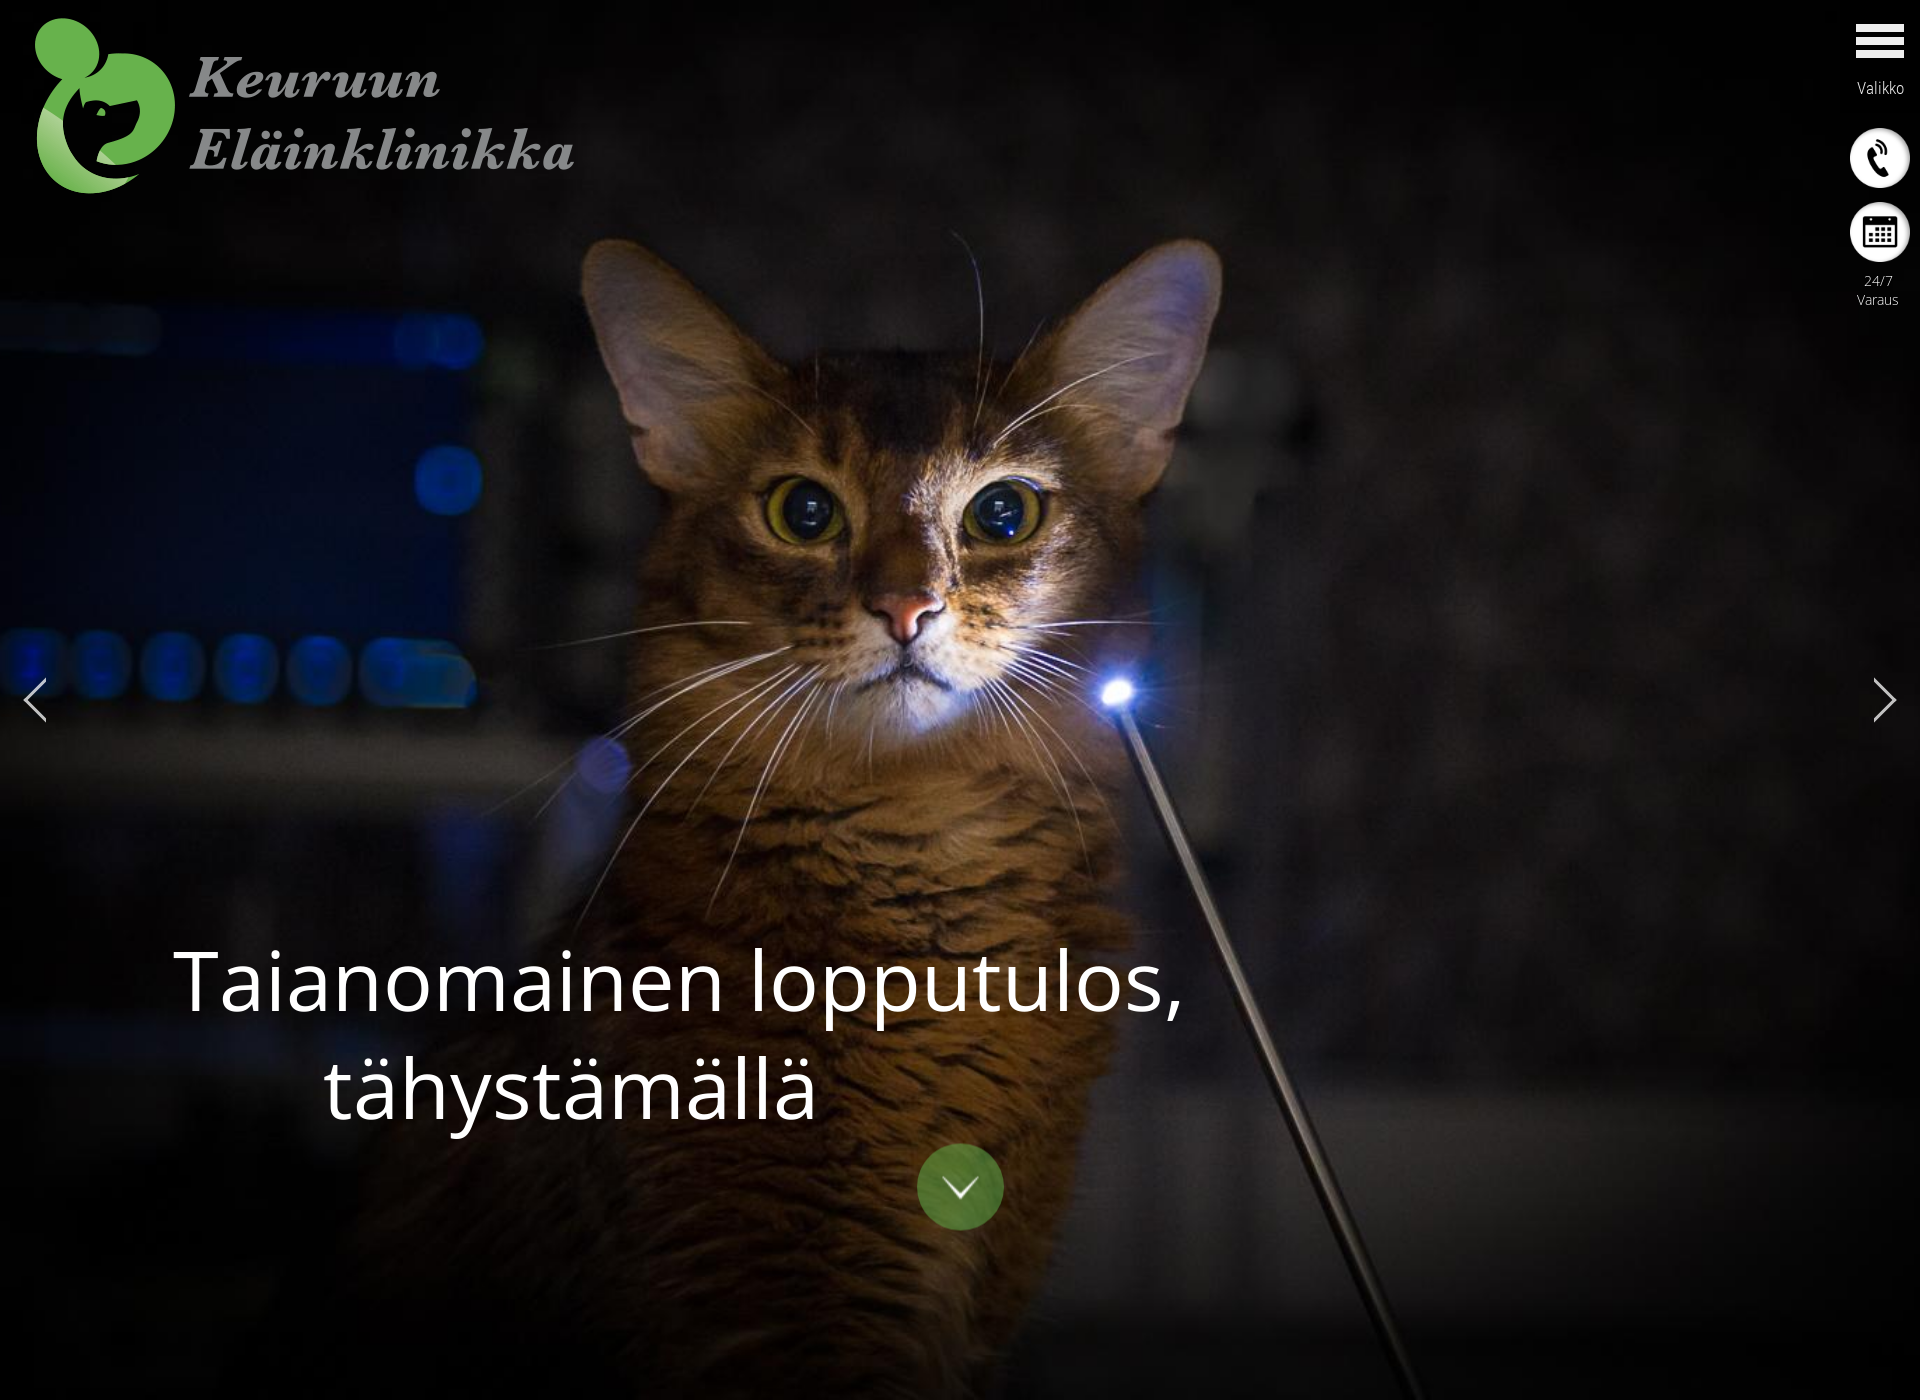 Näyttökuva keuruunelainklinikka.fi